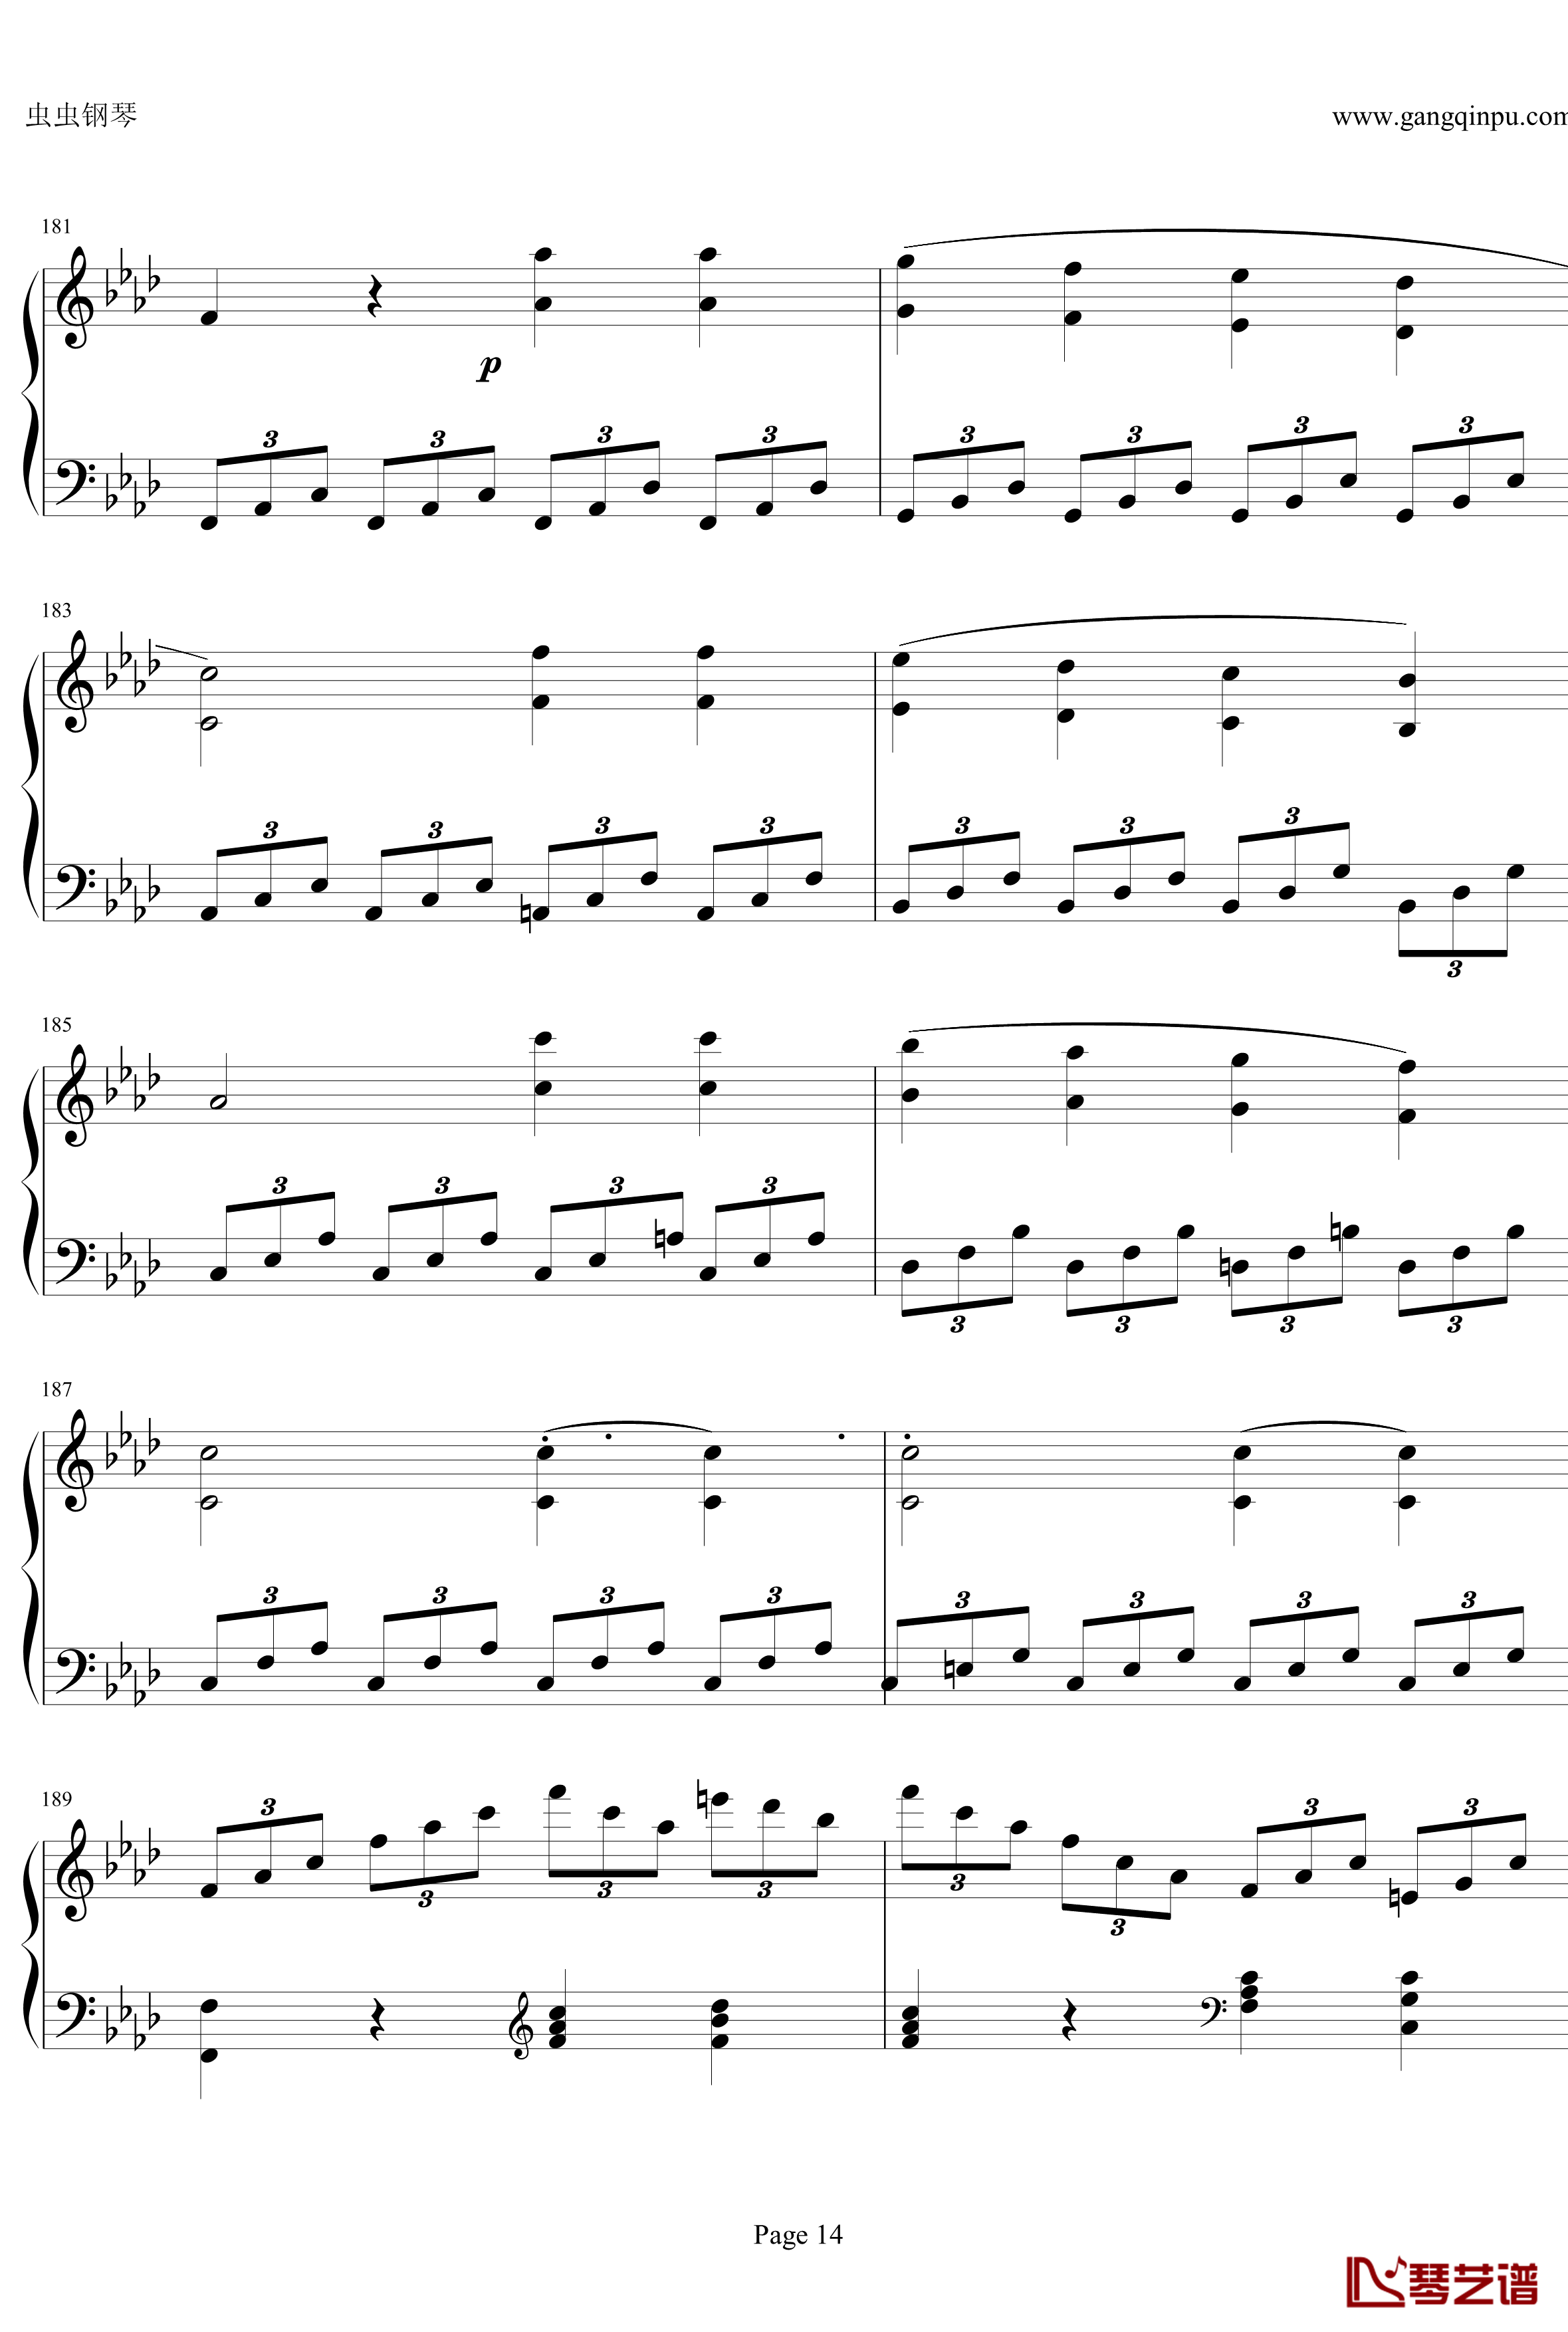 贝多芬第一钢琴奏鸣曲钢琴谱-作品2，第一号-贝多芬-beethoven14